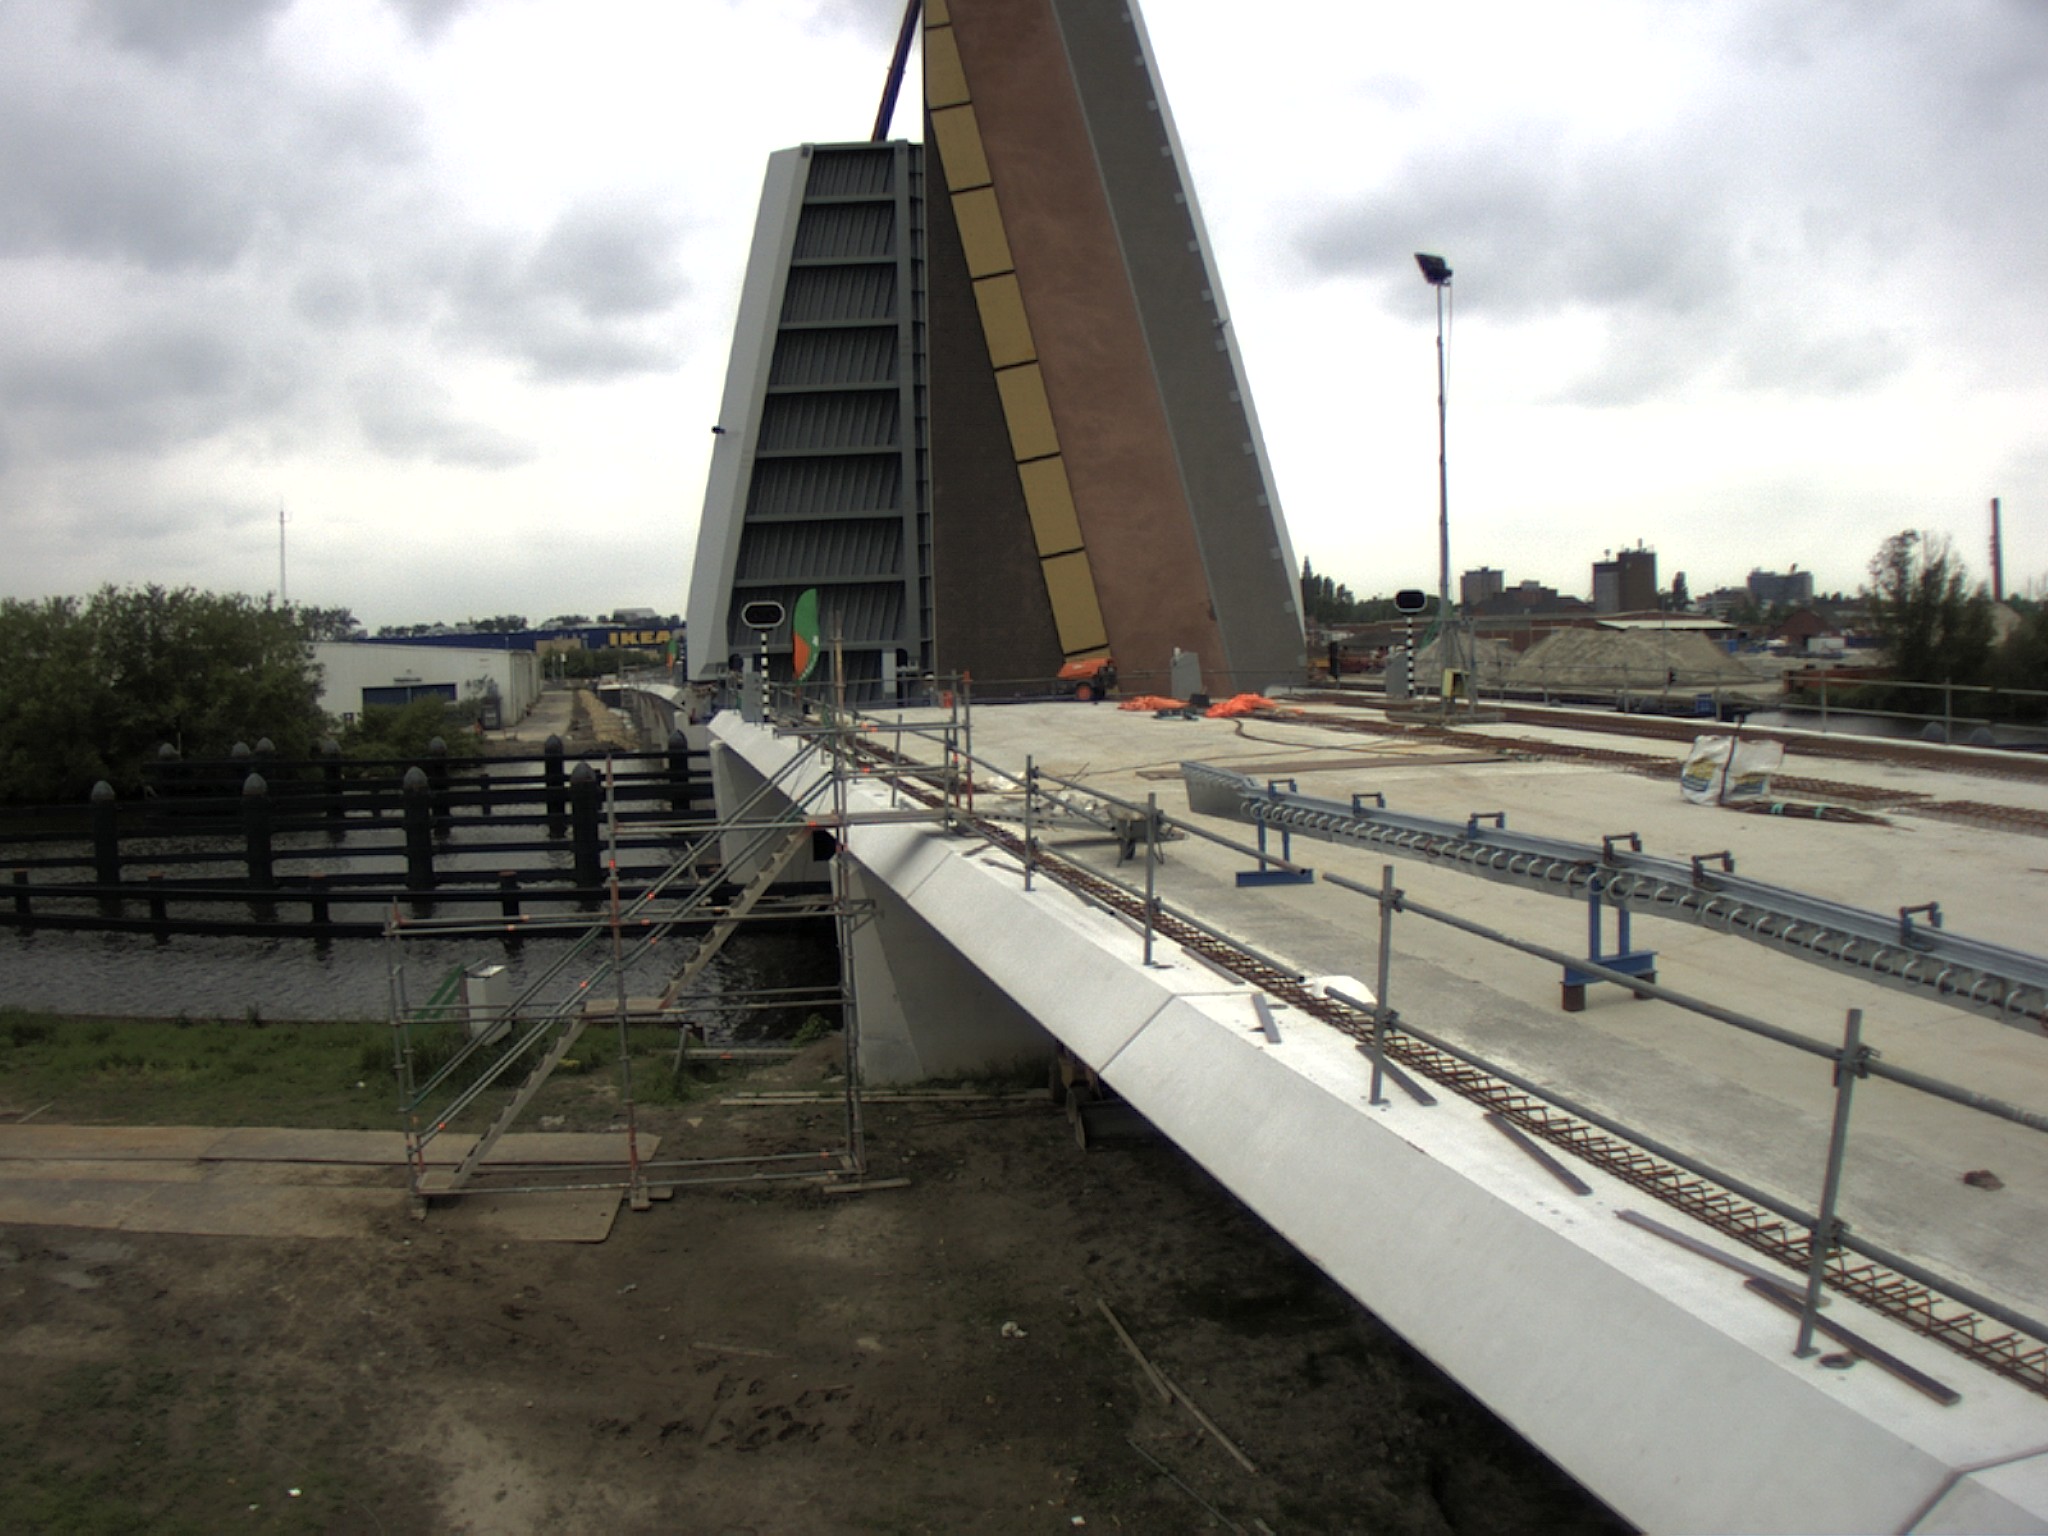 En daar is ie dan: de langste brug van Groningen!